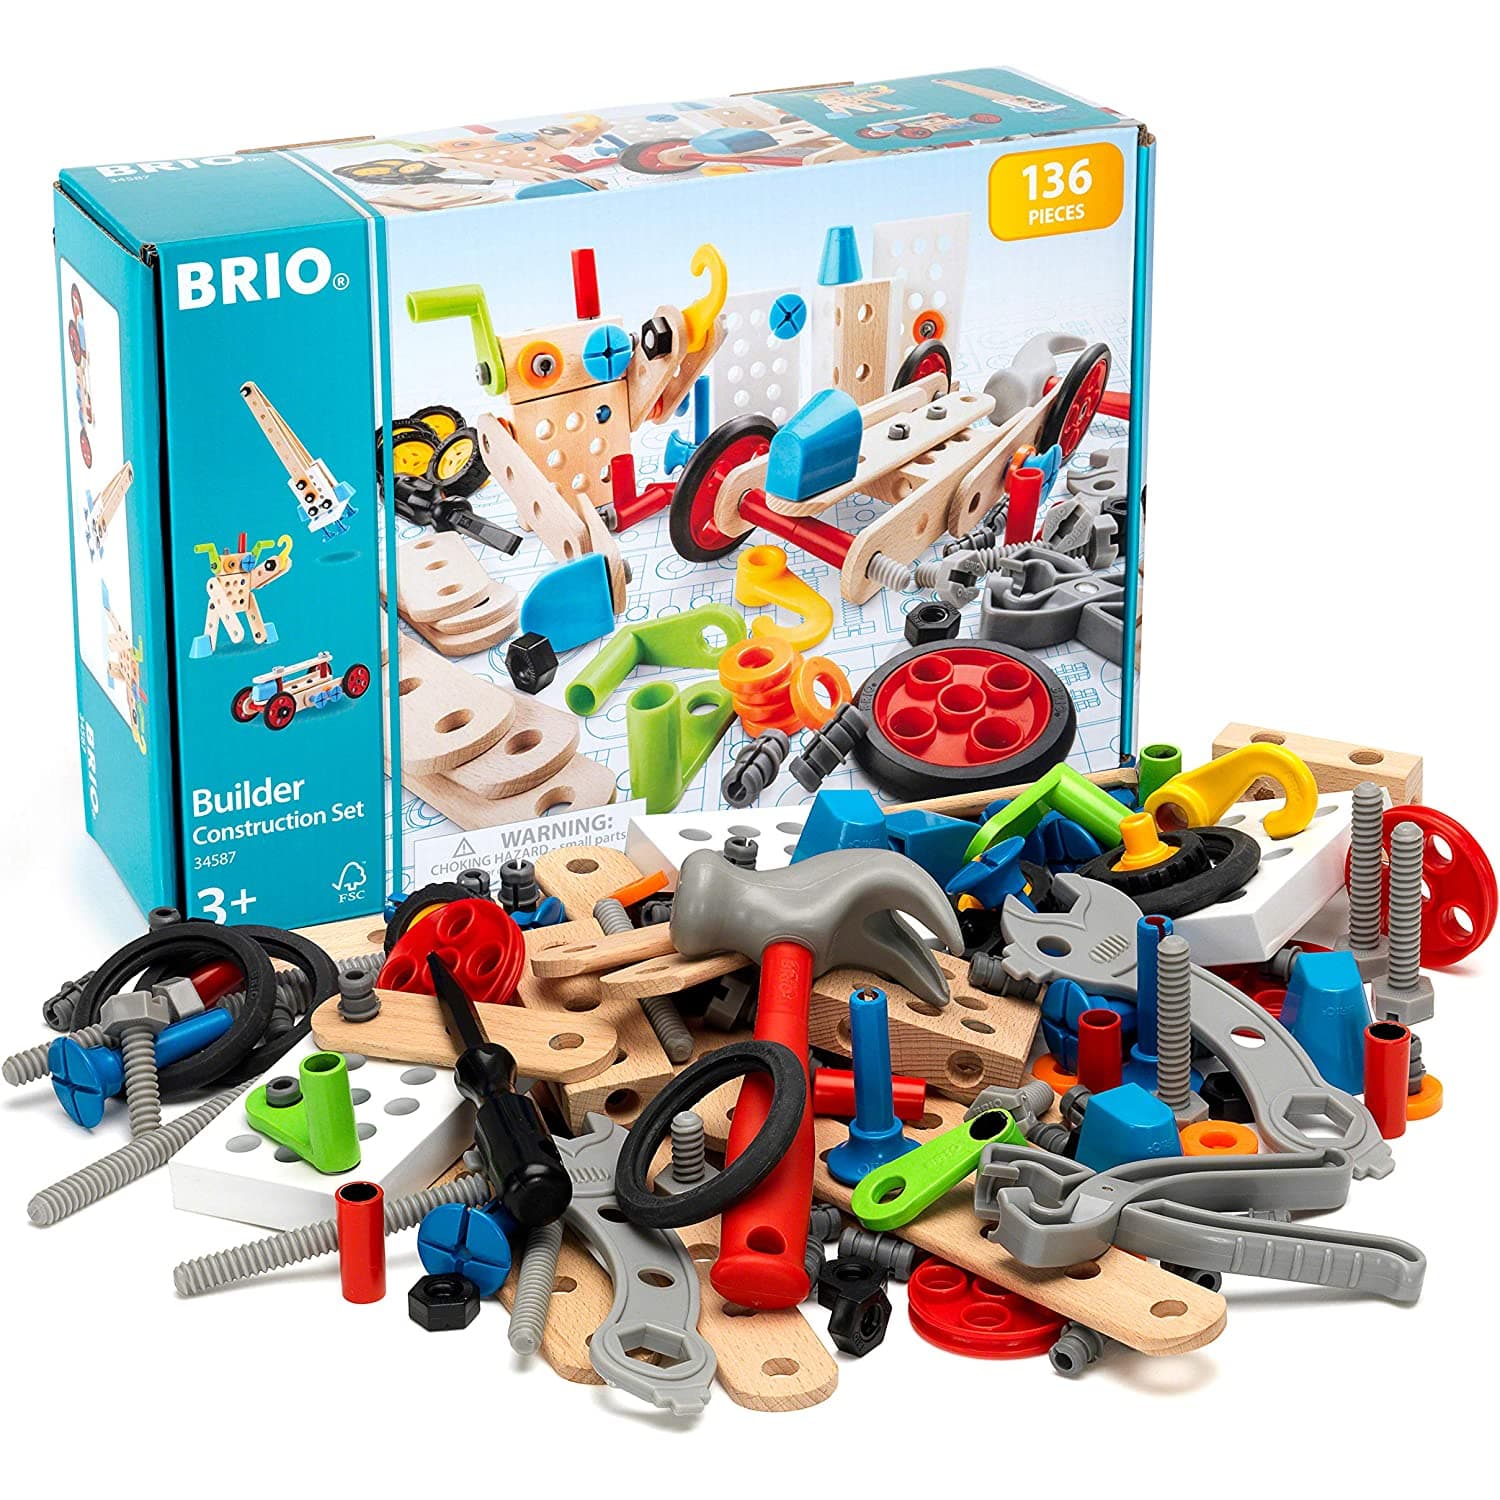 BRIO ブリオ ビルダー コンストラクションセット 全136ピースび 知育玩具  正規輸入品_1